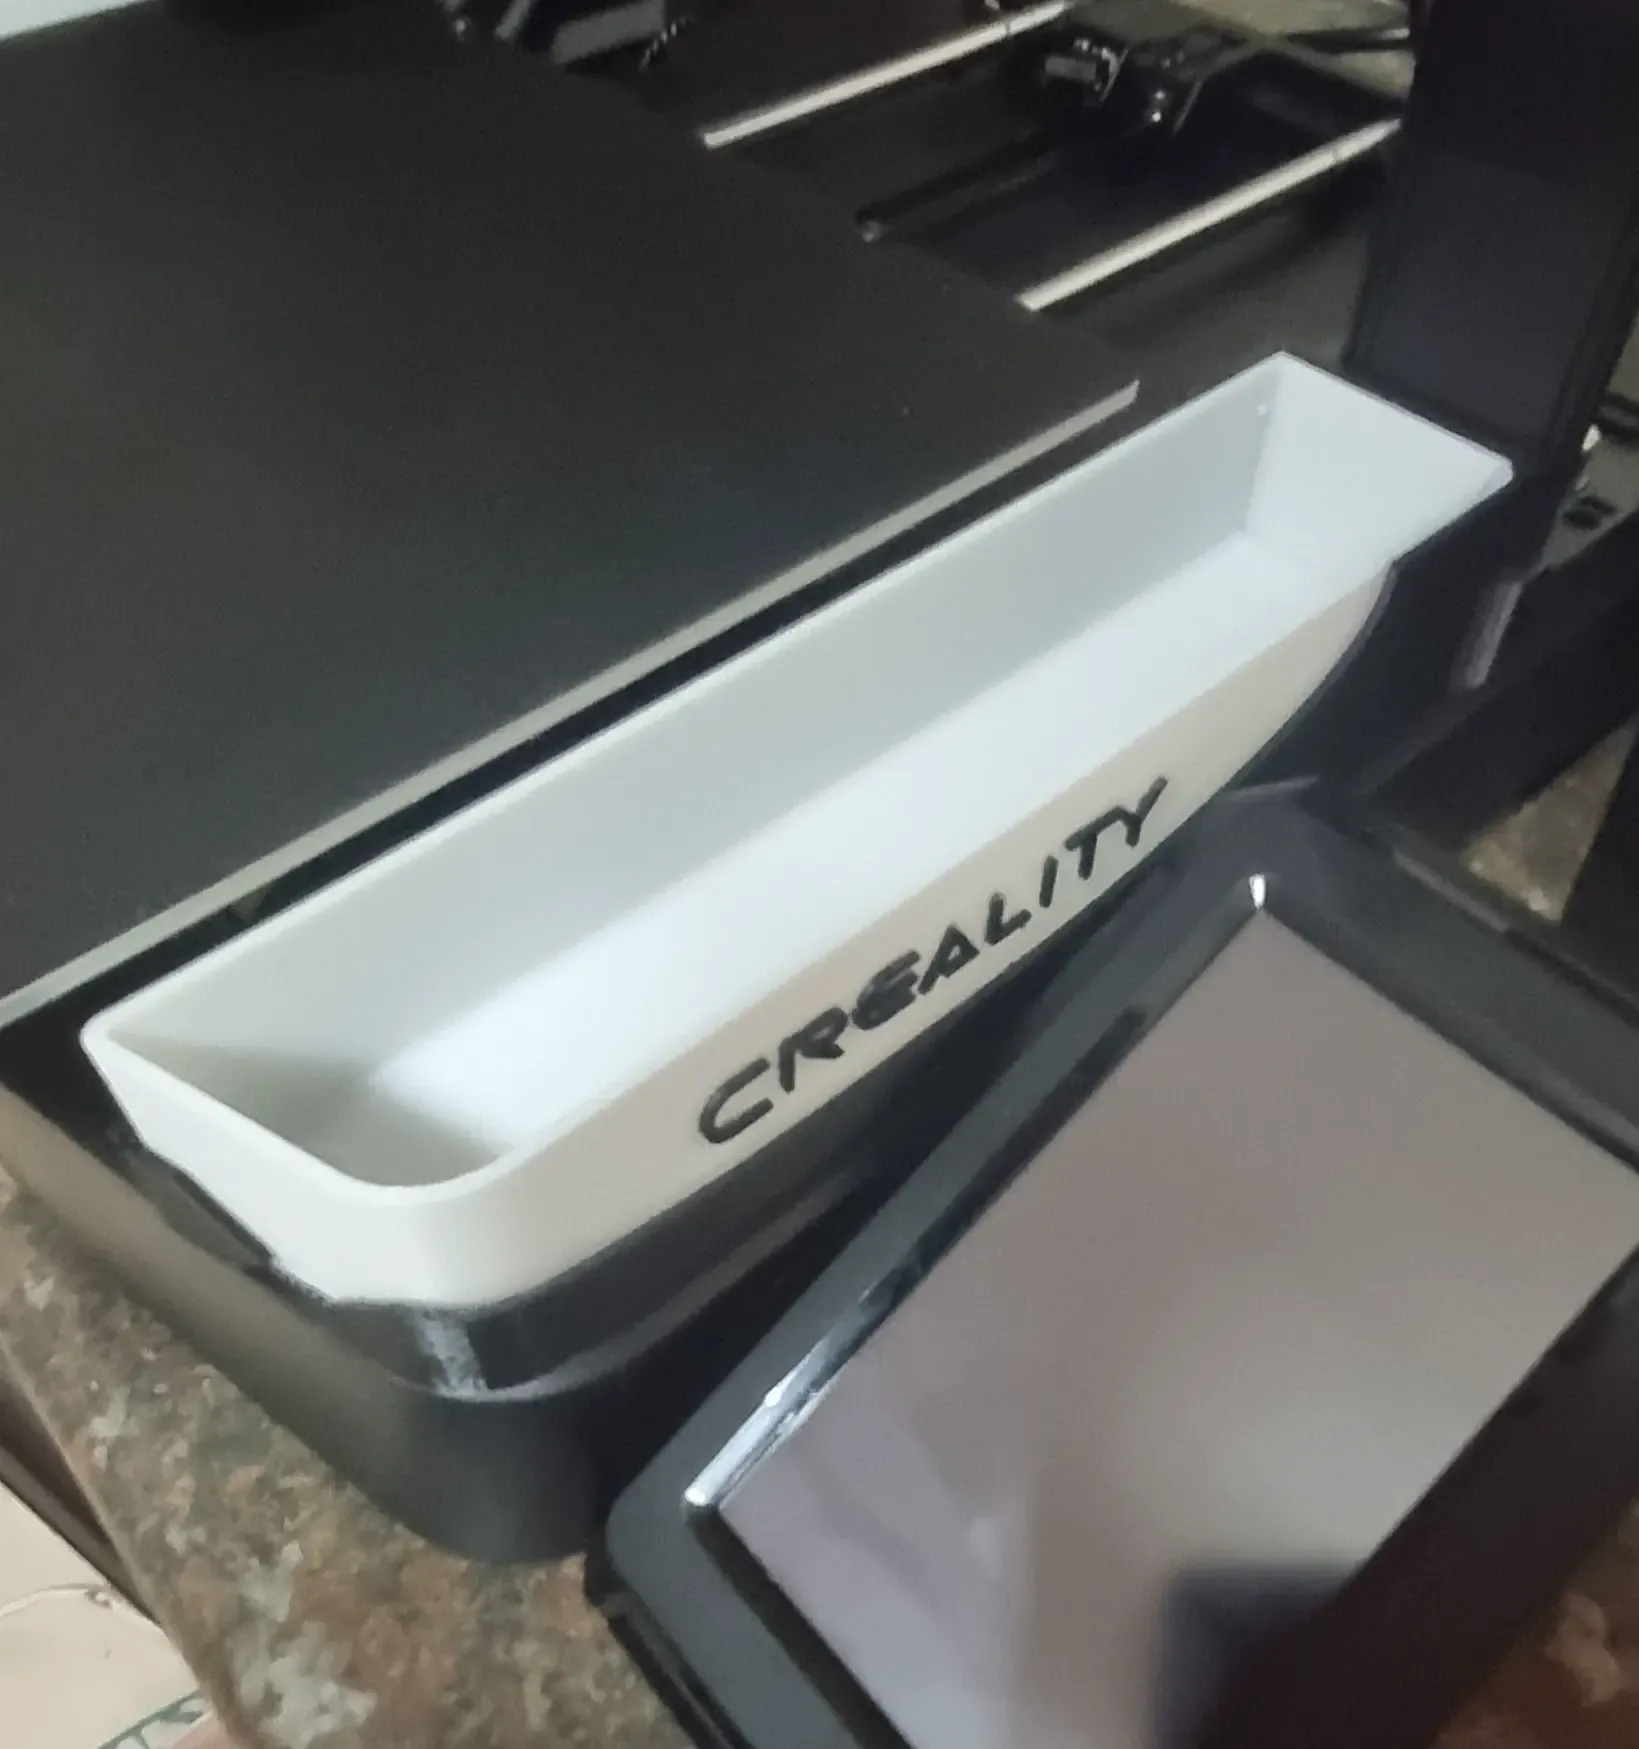 Waste bins for Ender 3 V3 KE/SE printers